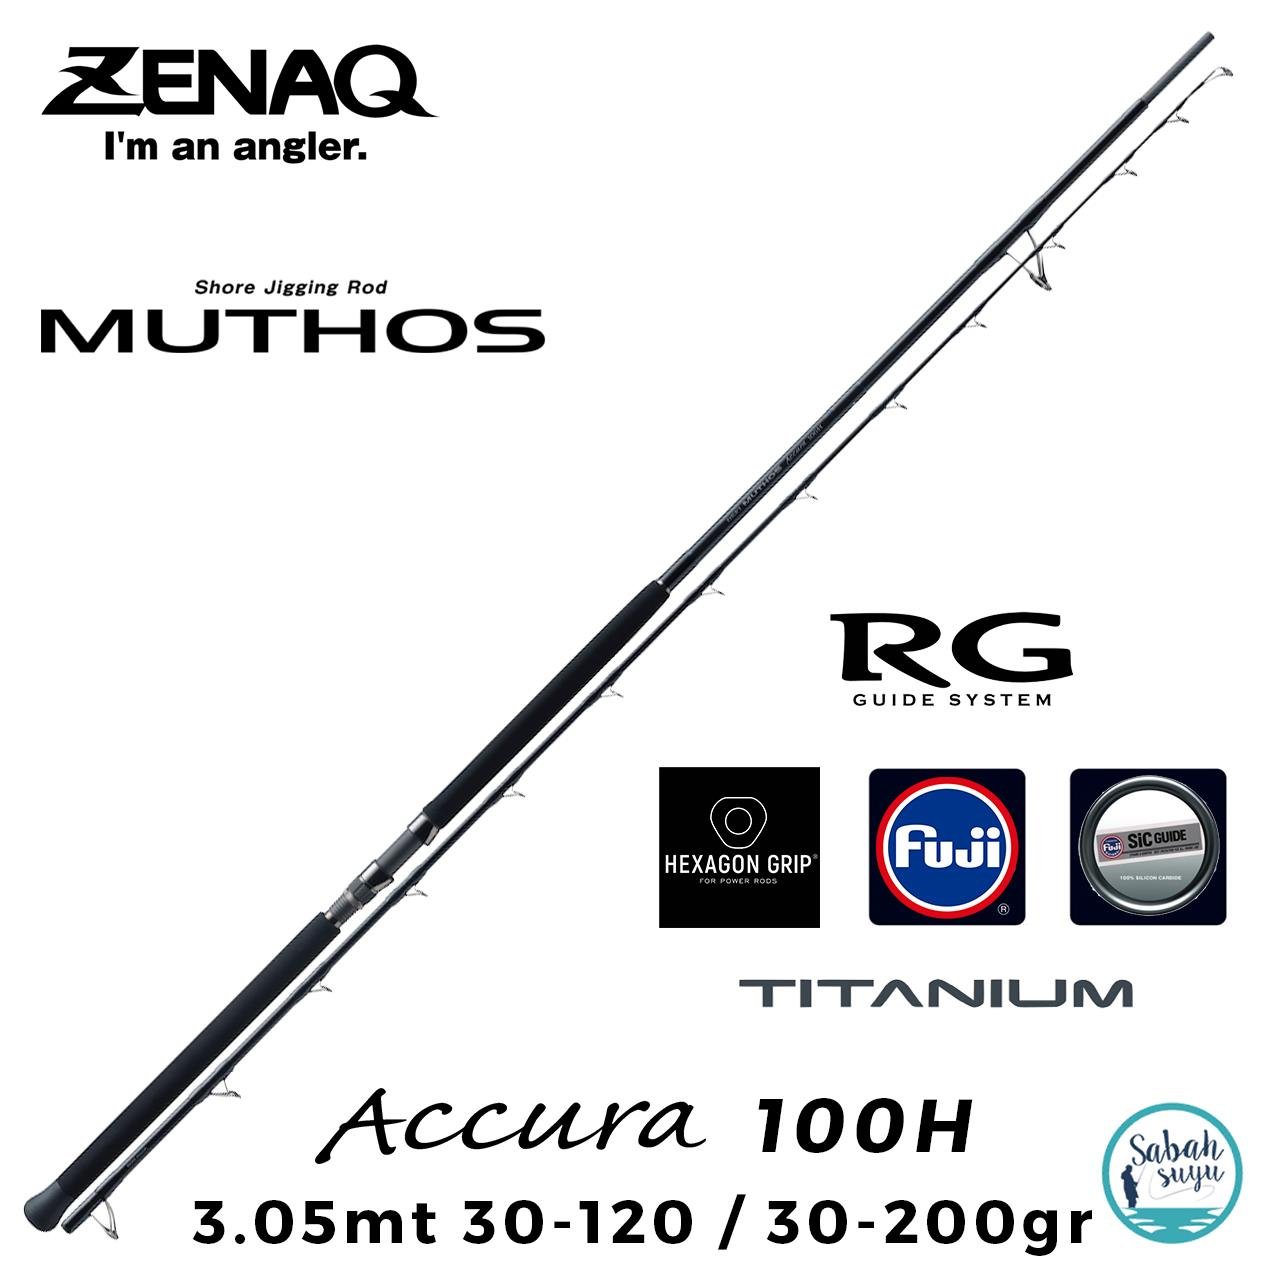 ZENAQ MUTHOS accura100H RGガイドモデル - フィッシング